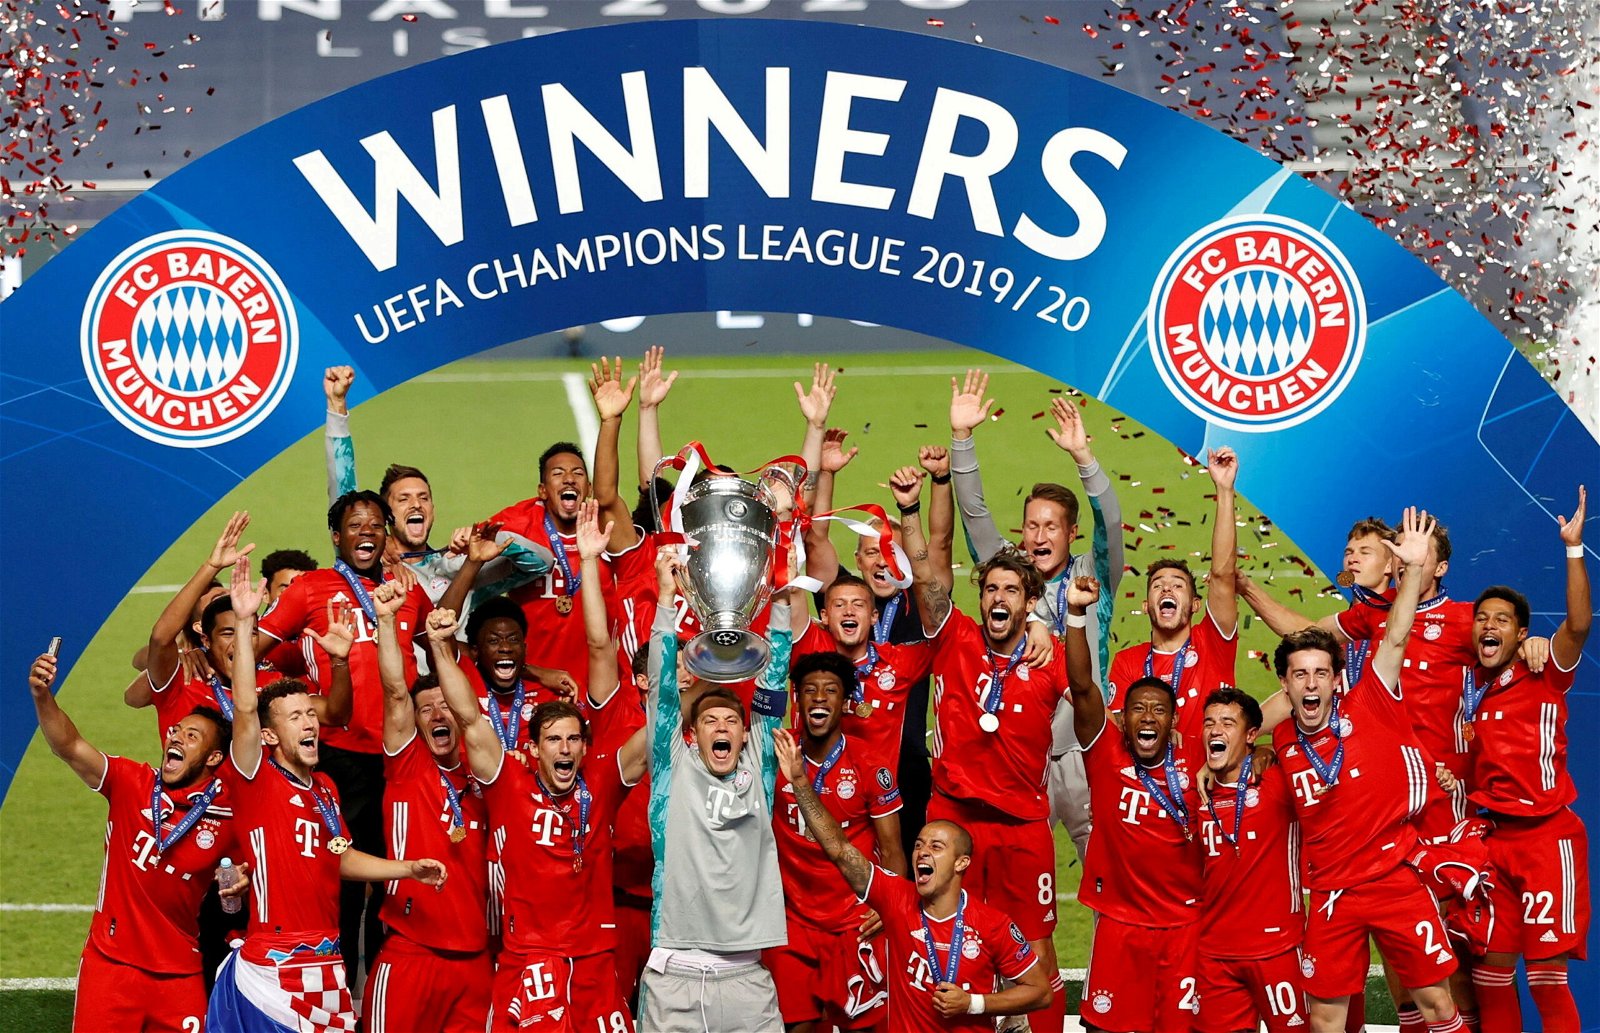 How many times have Bayern Munich won Champions League